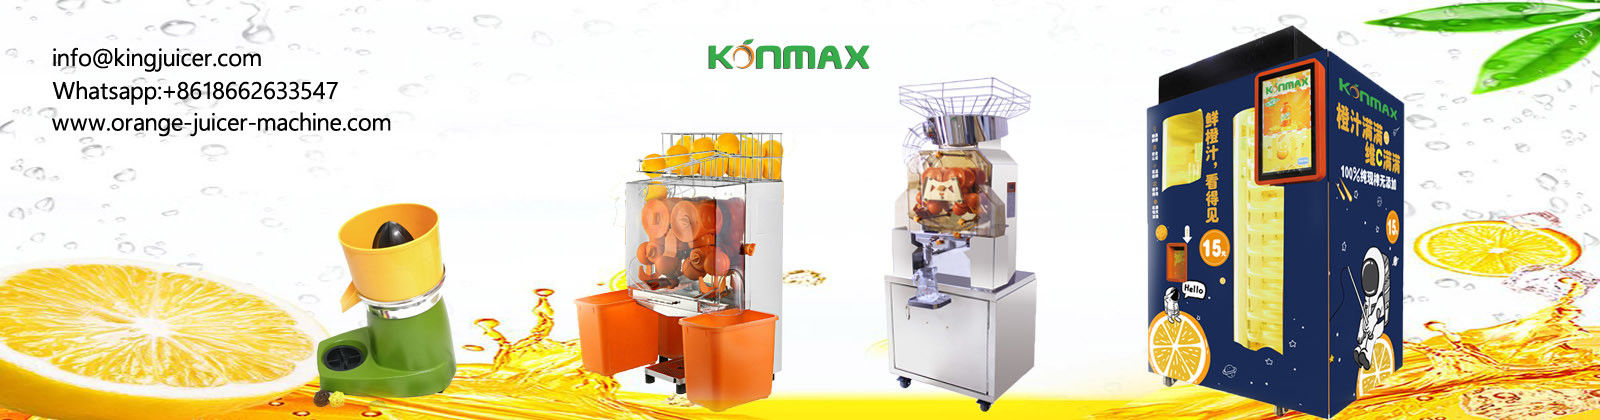 Machine orange automatique de presse-fruits